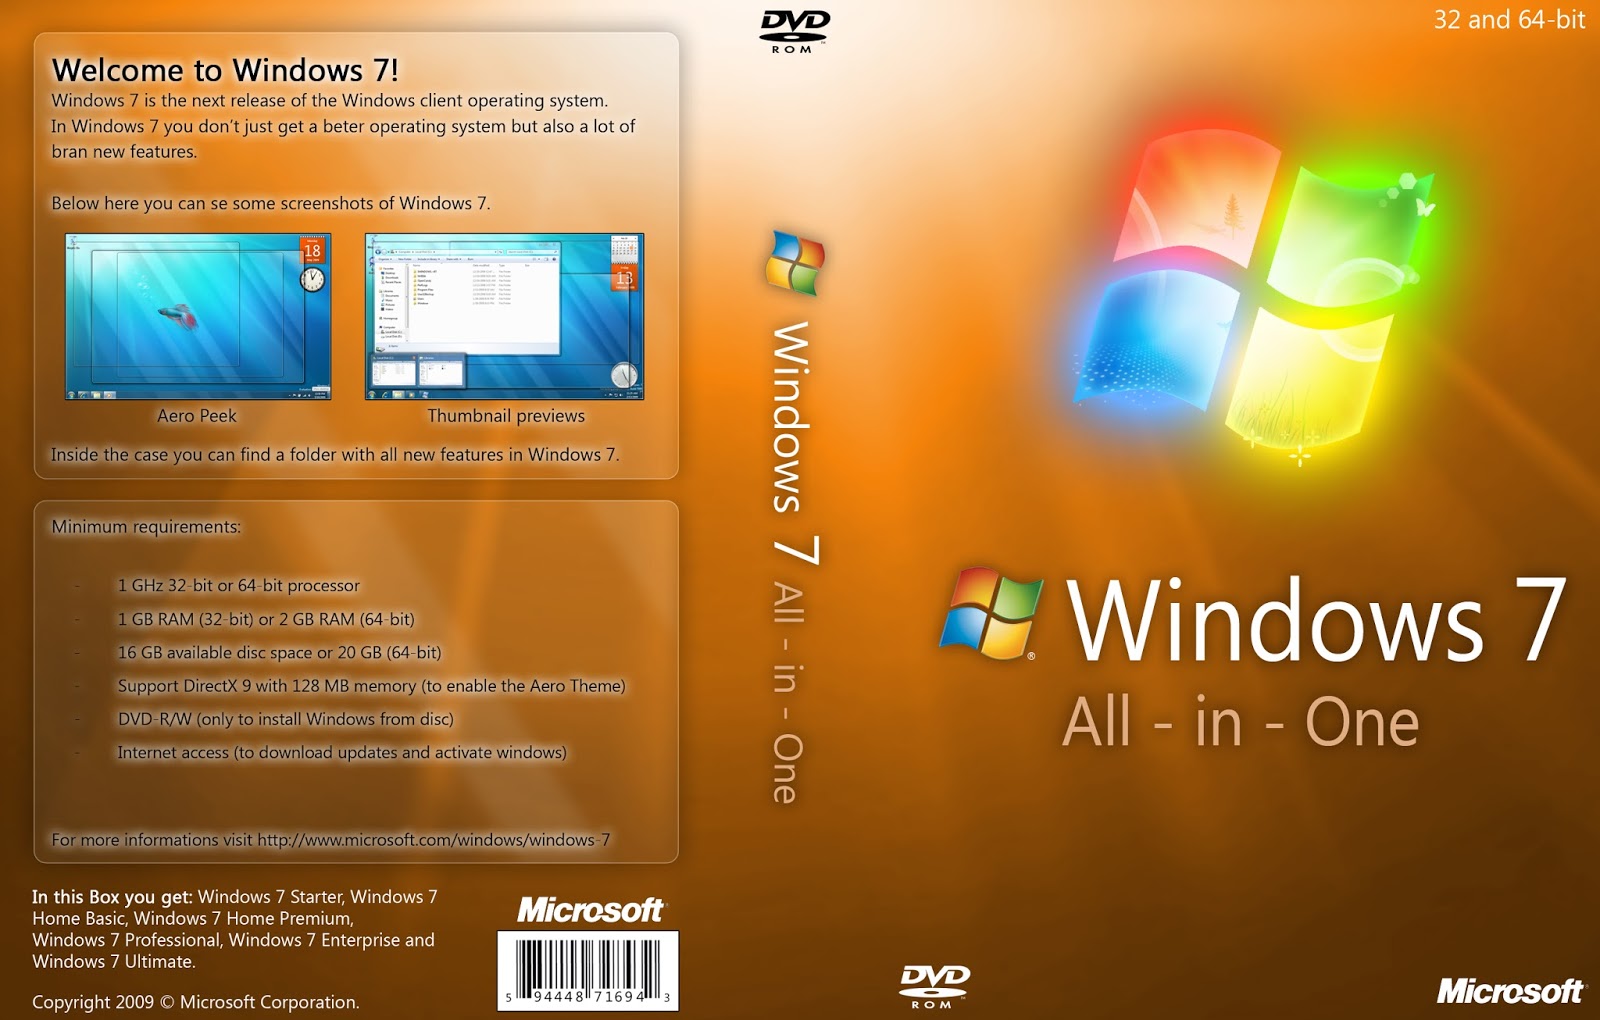 windows 7 home basic oa latam 64 bits pt br iso download torrent